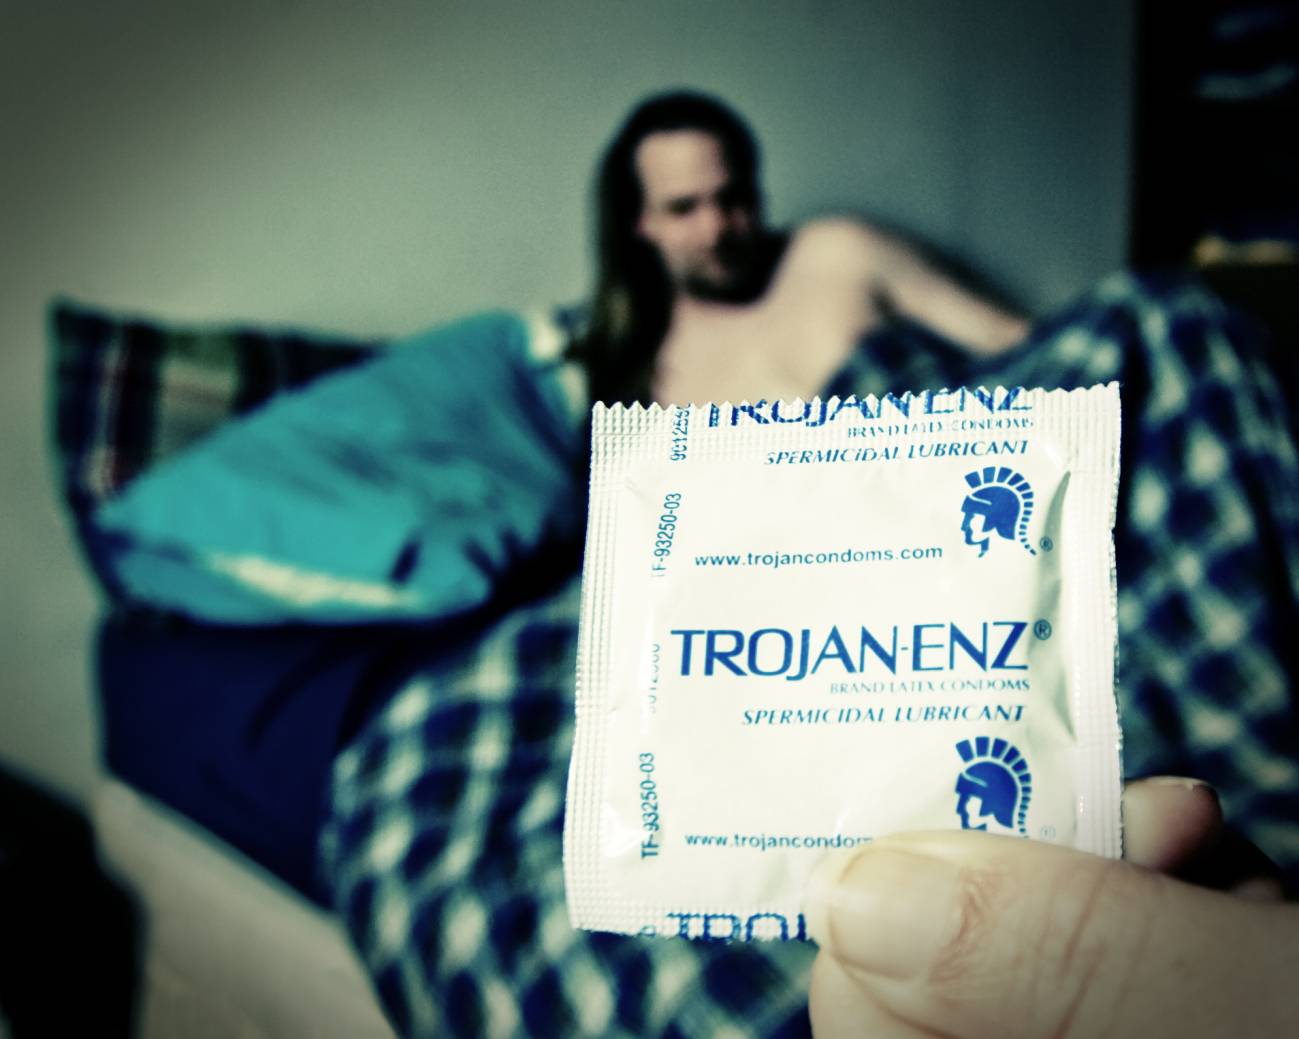 Las prostitutas españolas son las que utilizan menos el condón